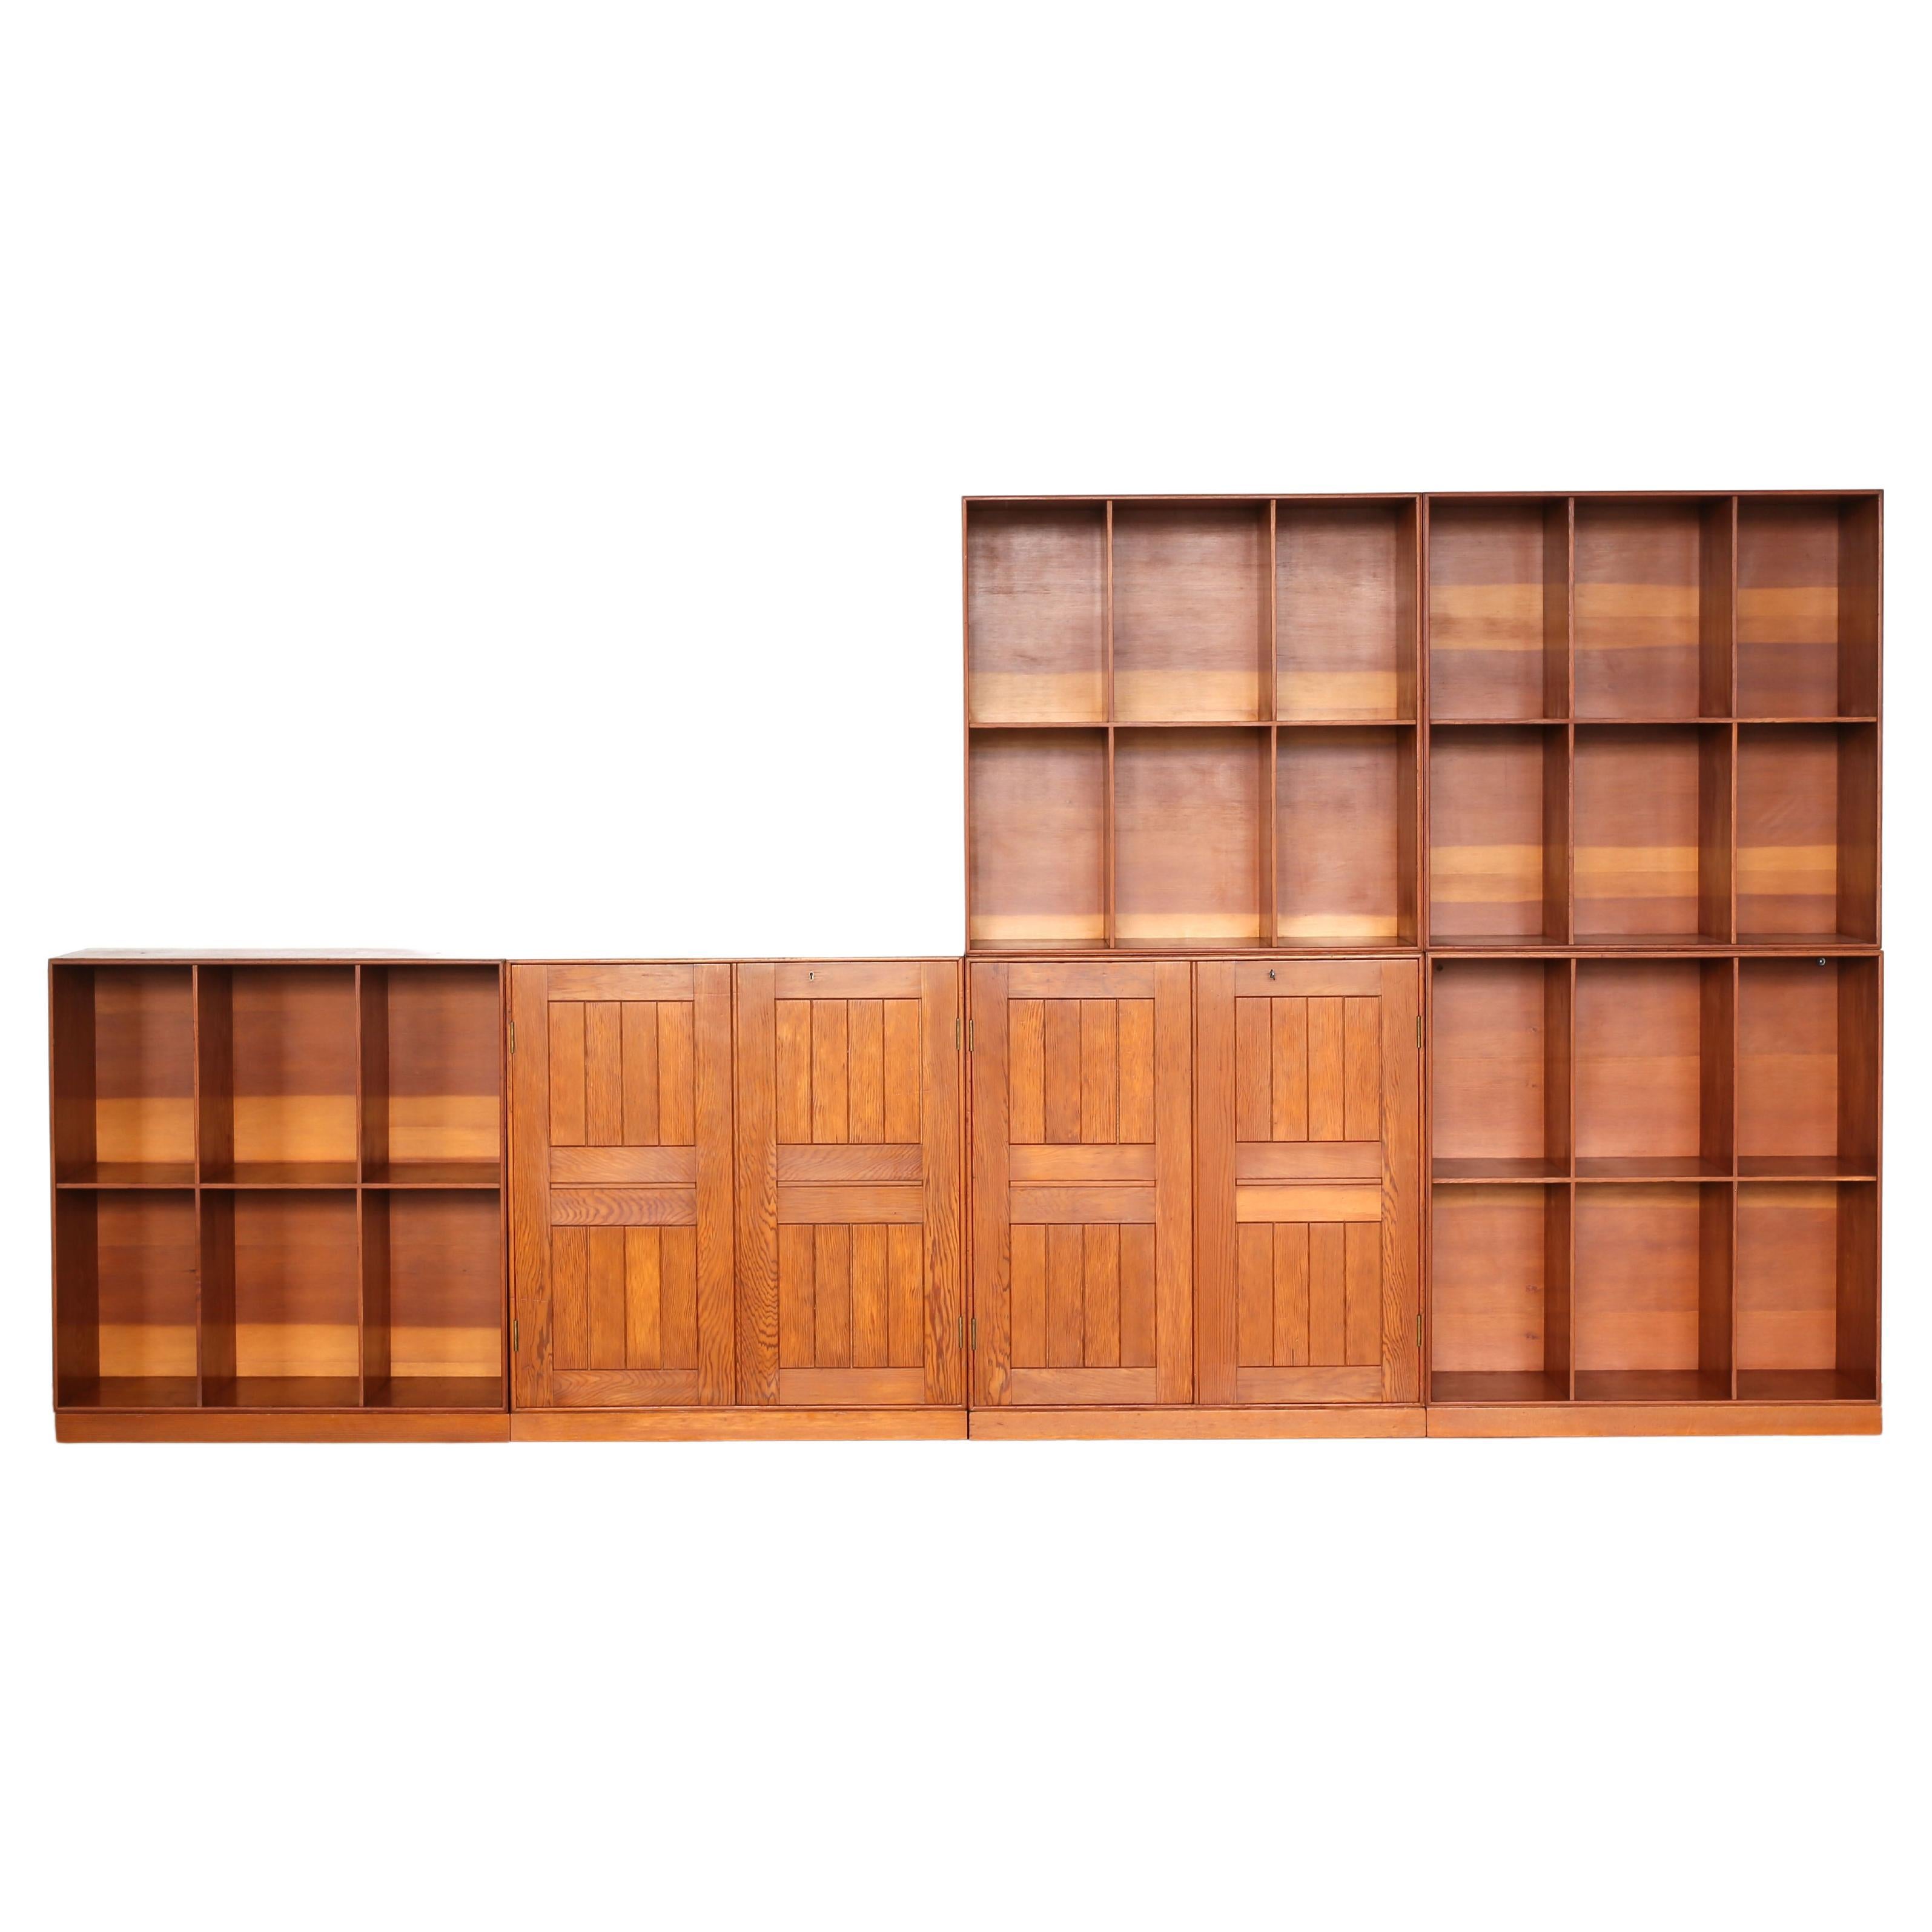 Eine modulare Bibliothek von Mogens Koch in Oregon Pine, bestehend aus zwei Schränken und vier Bücherkisten mit Sockeln. 

Entworfen 1928 - 1932, ausgeführt bei der Schreinerei Rud. Rasmussen, Kopenhagen, Dänemark. Alle Stücke sind auf der Rückseite